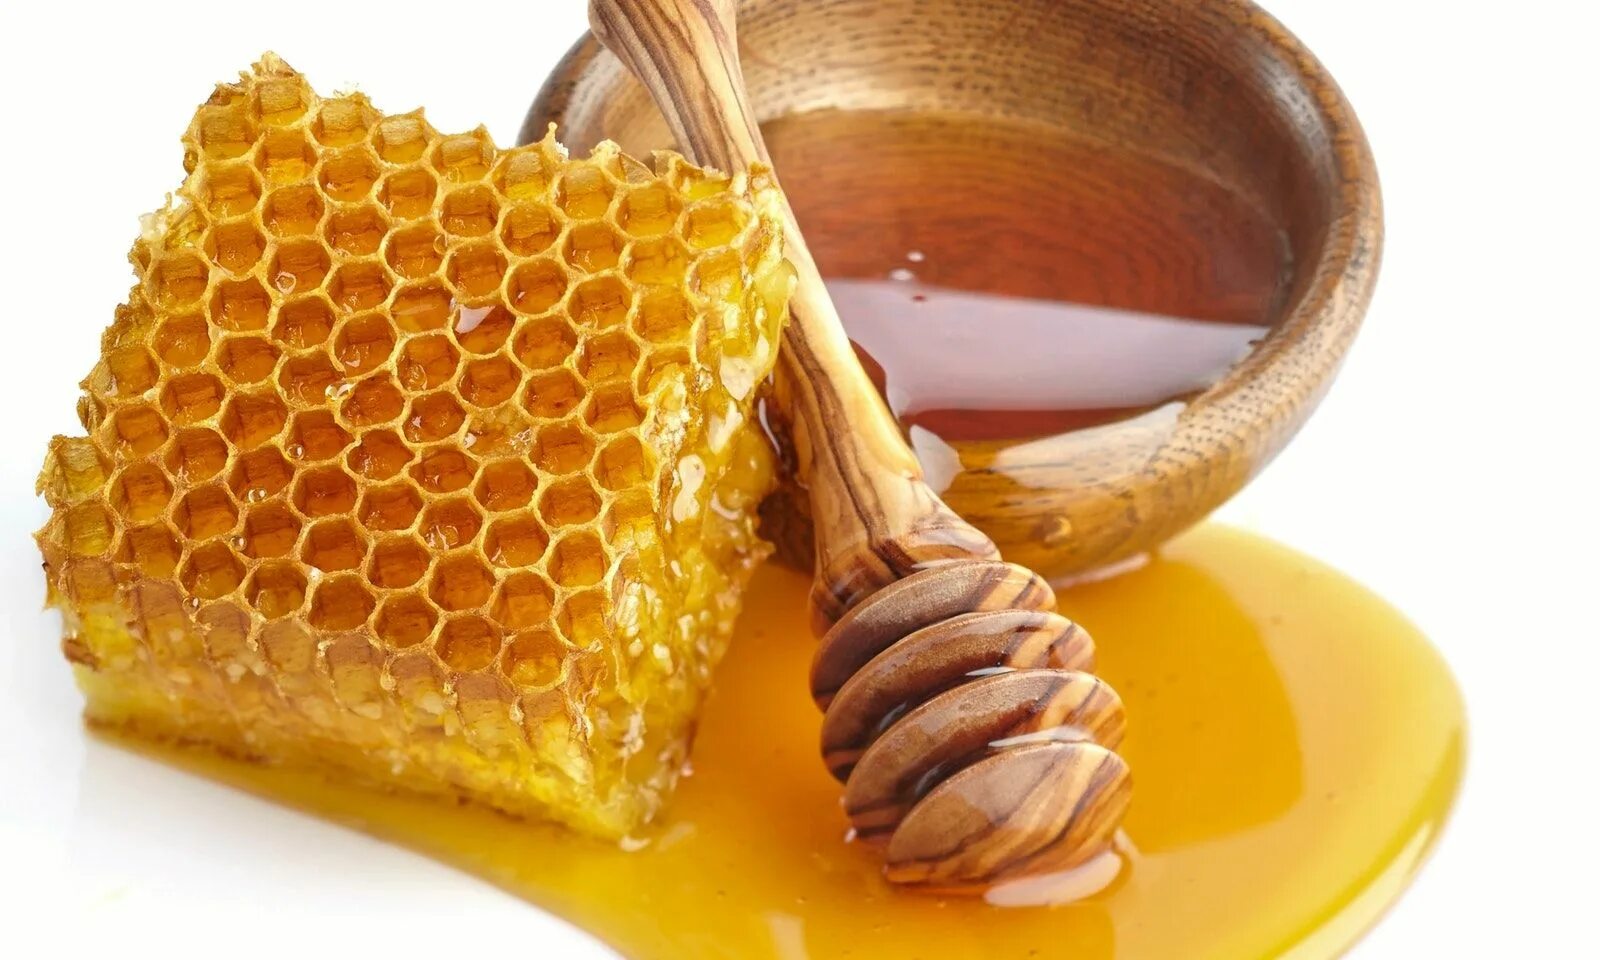 Honey медовый. Медовые соты. Соты меда. Пчелиные соты с медом. Мед с воском.